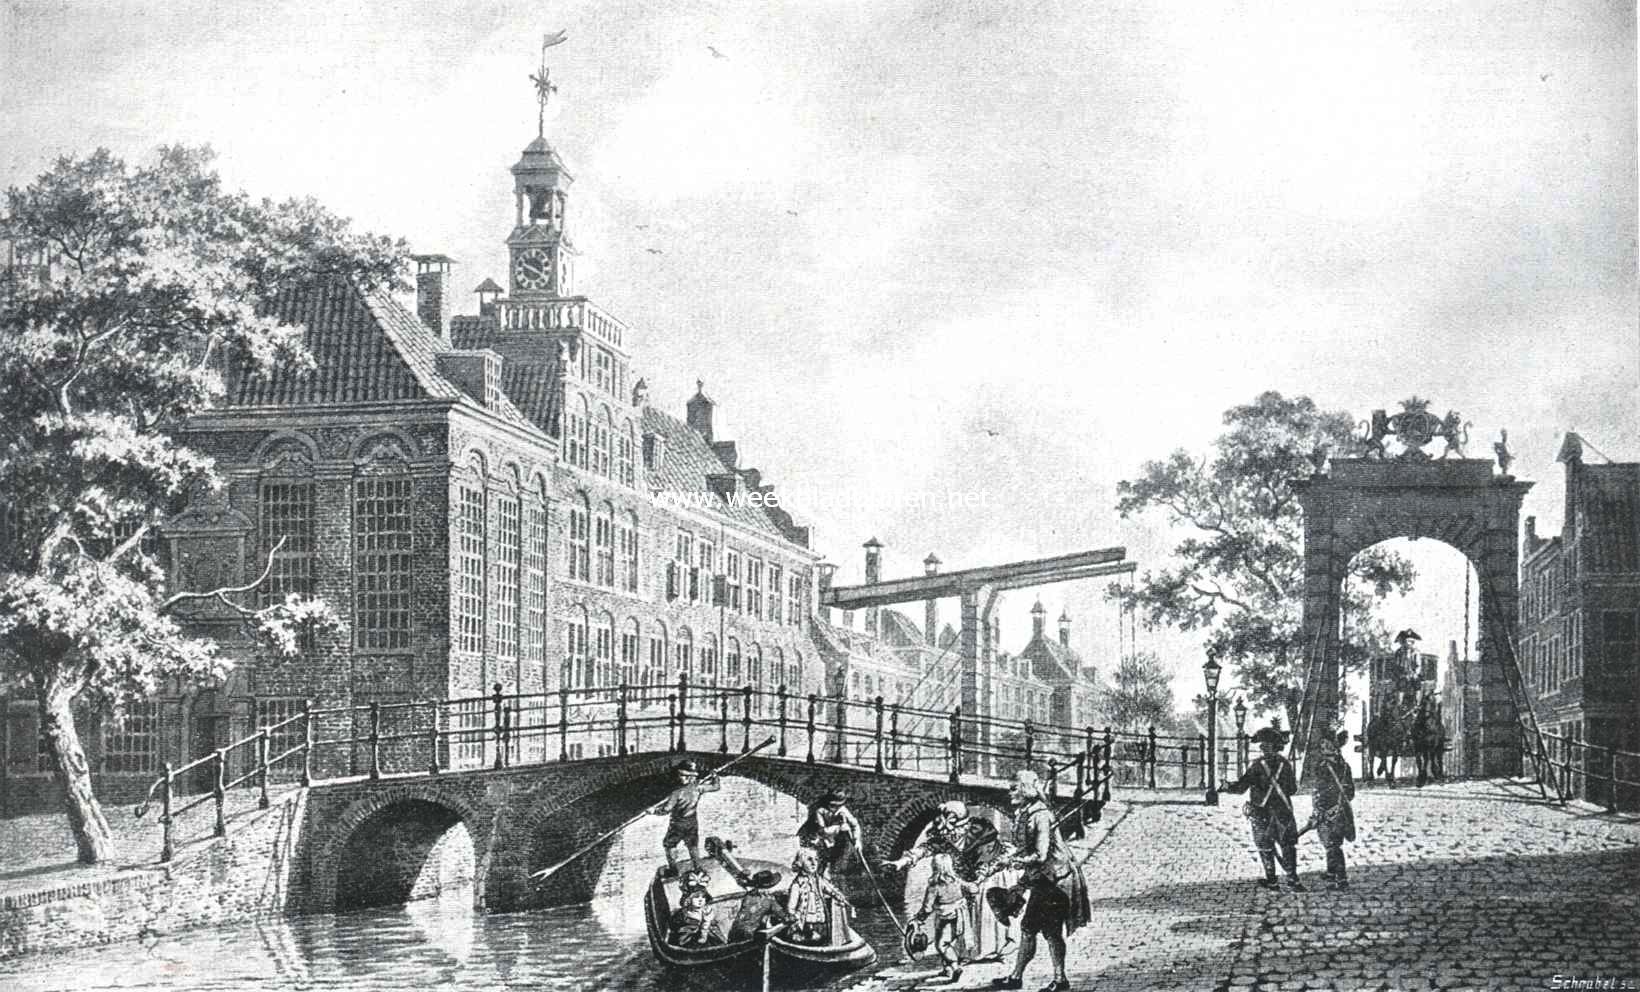 Sloopend herboren-Nederland. IV. Een eeuw slooperswerk in Den Haag. Het gesloopte Diaconiehuis aan het thans gedempte Spui te 's Gravenhage en de verdwenen ophaalbruggen